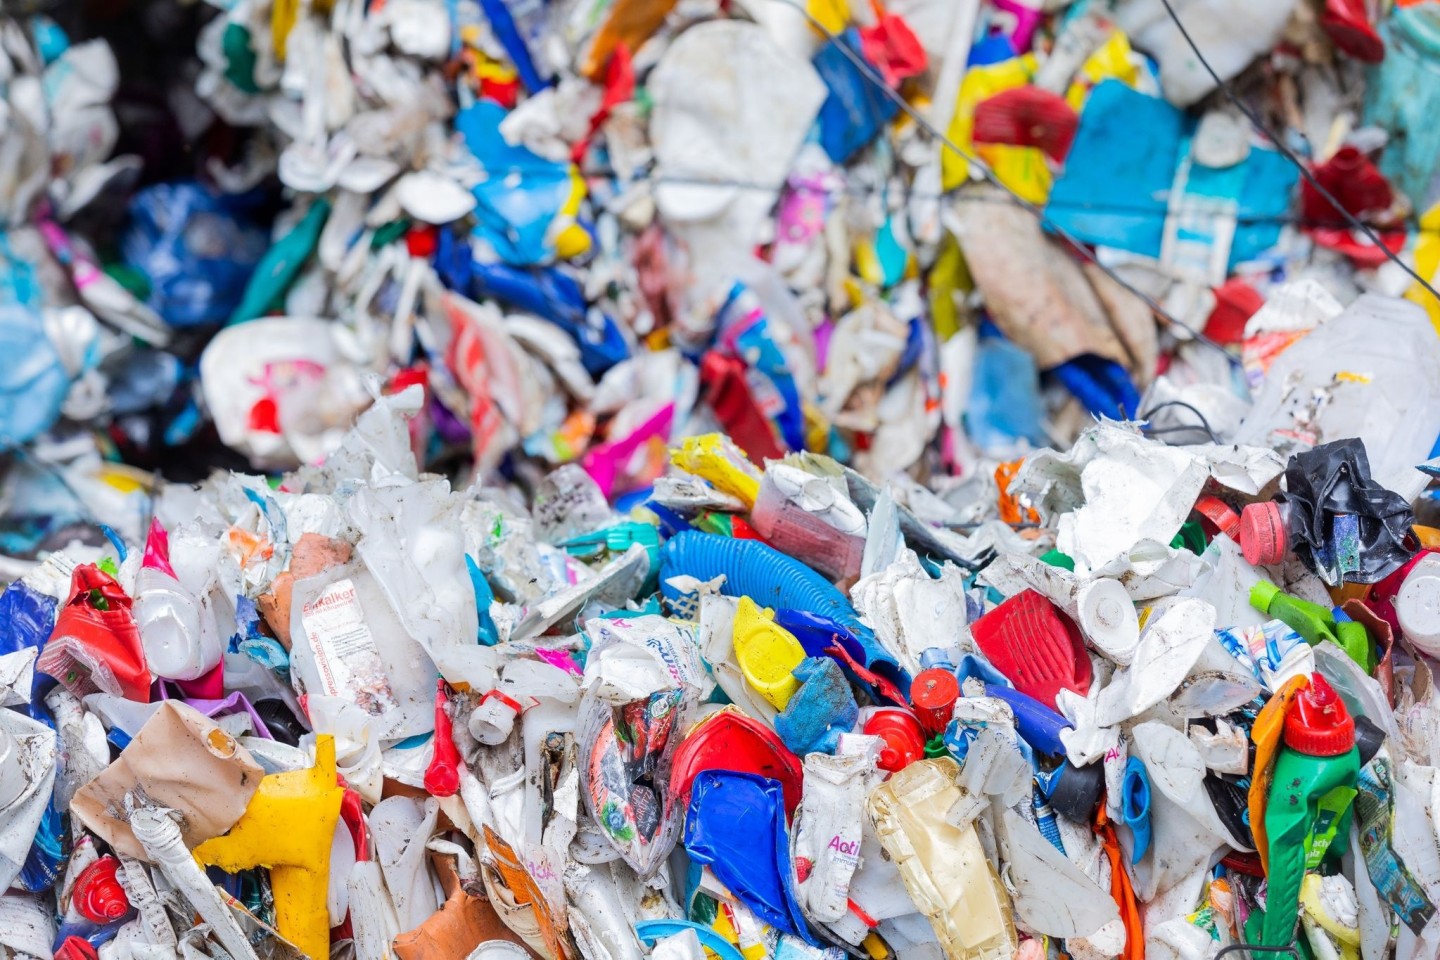 Sortierte Verpackungsabfälle: Schon jetzt stehen einer Studie zufolge alle Ressourcen bereit, um die weltweite Plastikverschmutzung bis 2040 um 80 Prozent zu verringern.